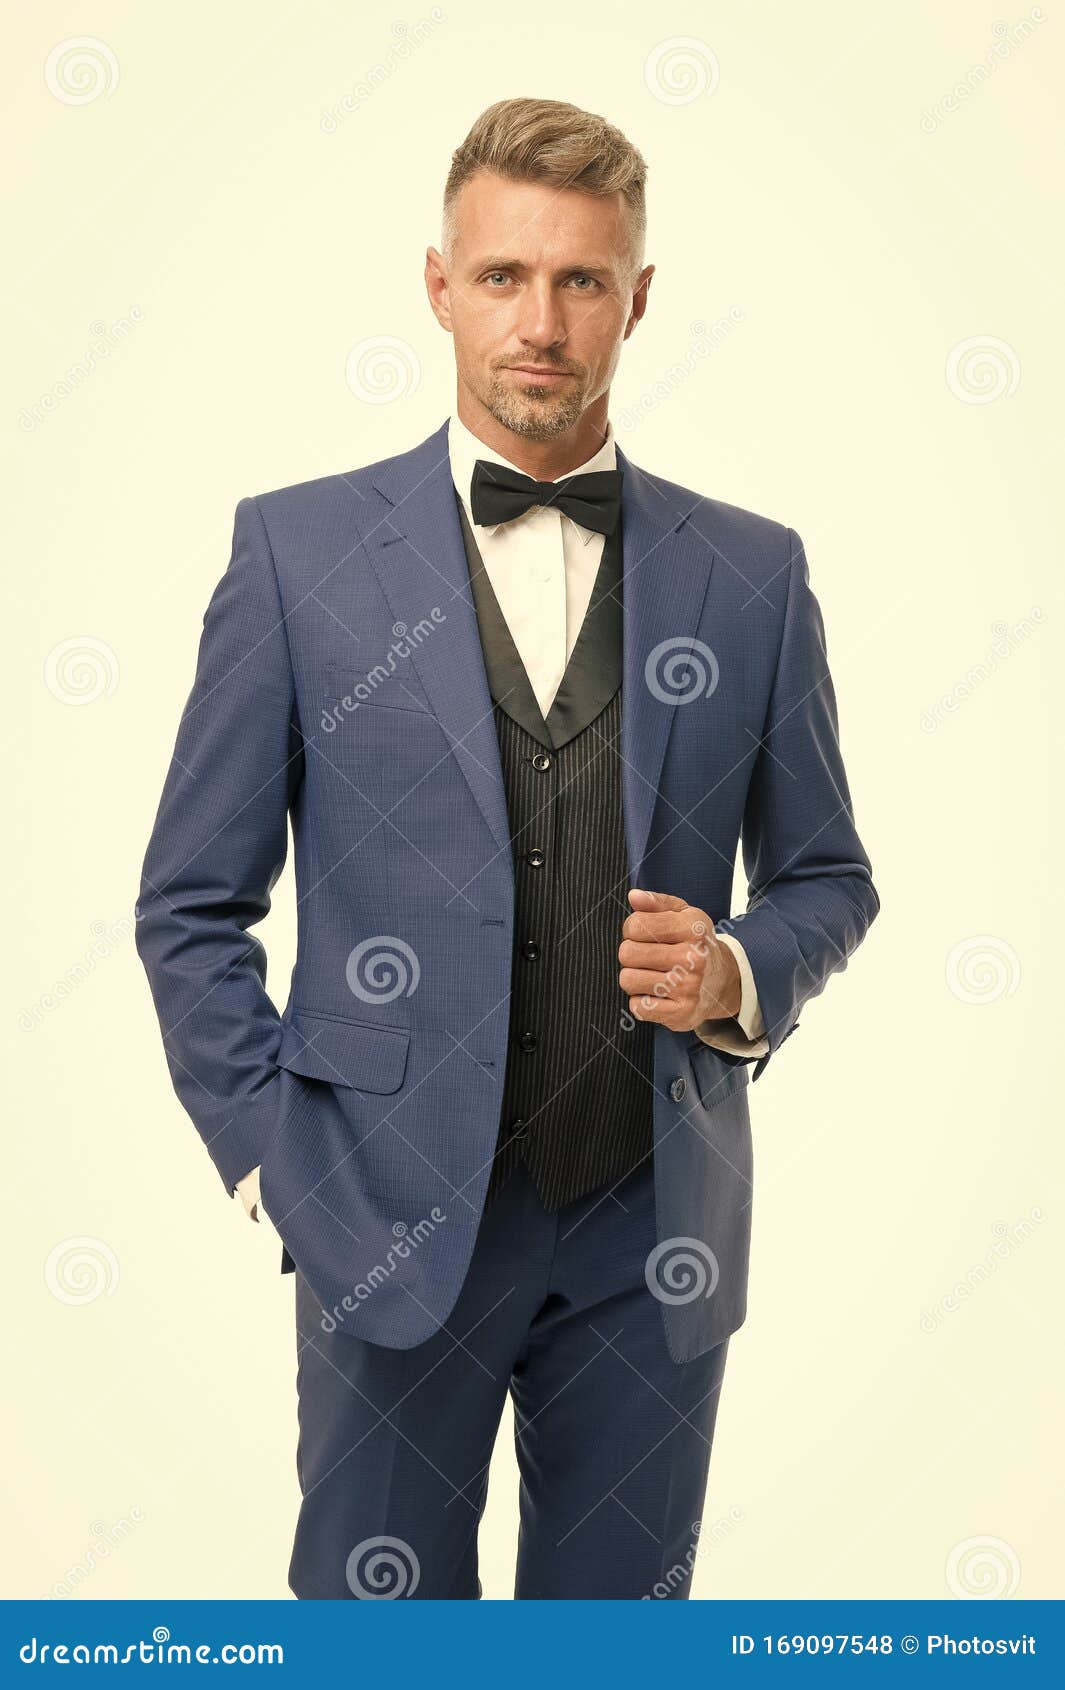 Maatpak Mode-shop Elegant Modewerk Voor Evenementen Gentleman Stijl Guy Well Stock Foto - Image of begrip, mens: 169097548